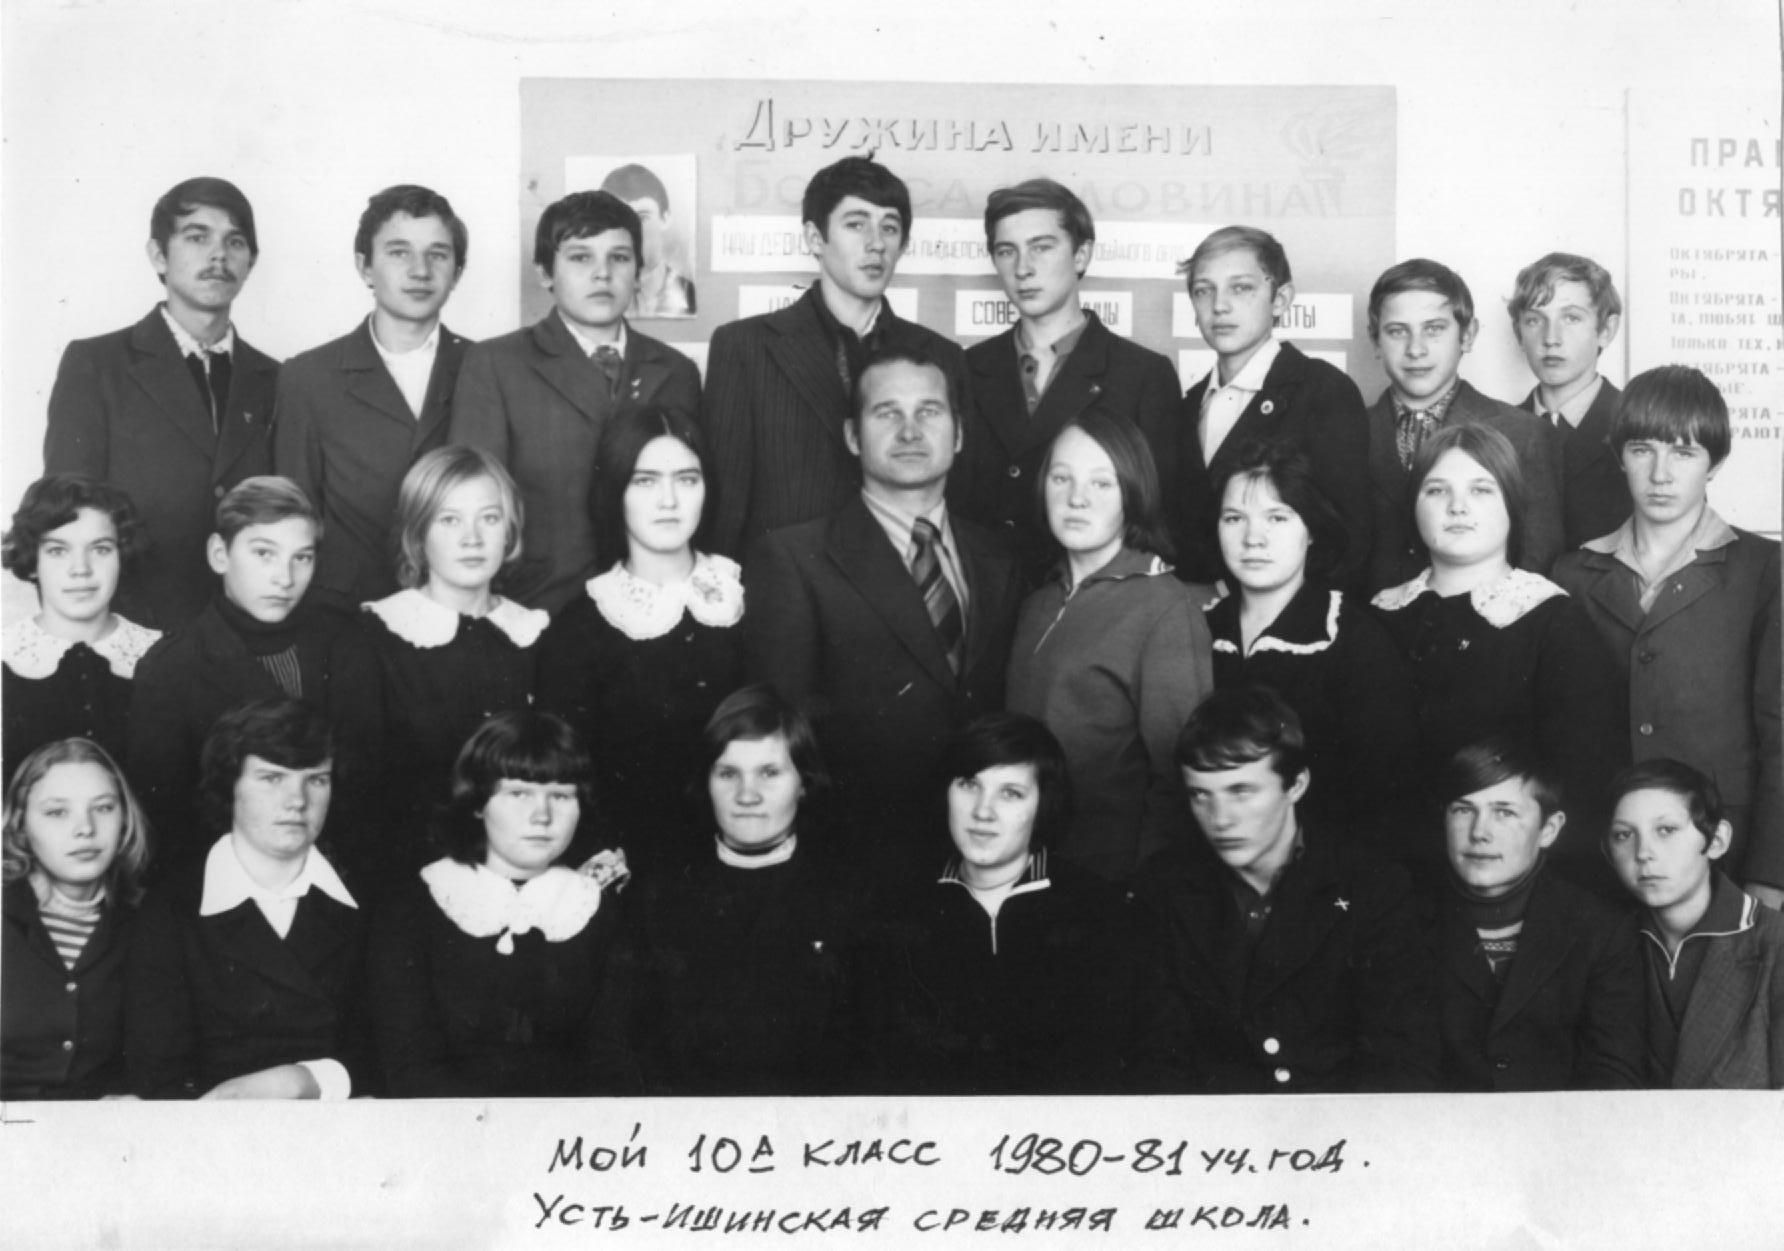 10-а класс 1980-1981 уч. год Усть-Ишинская средняя школа со своим классным руководителем.